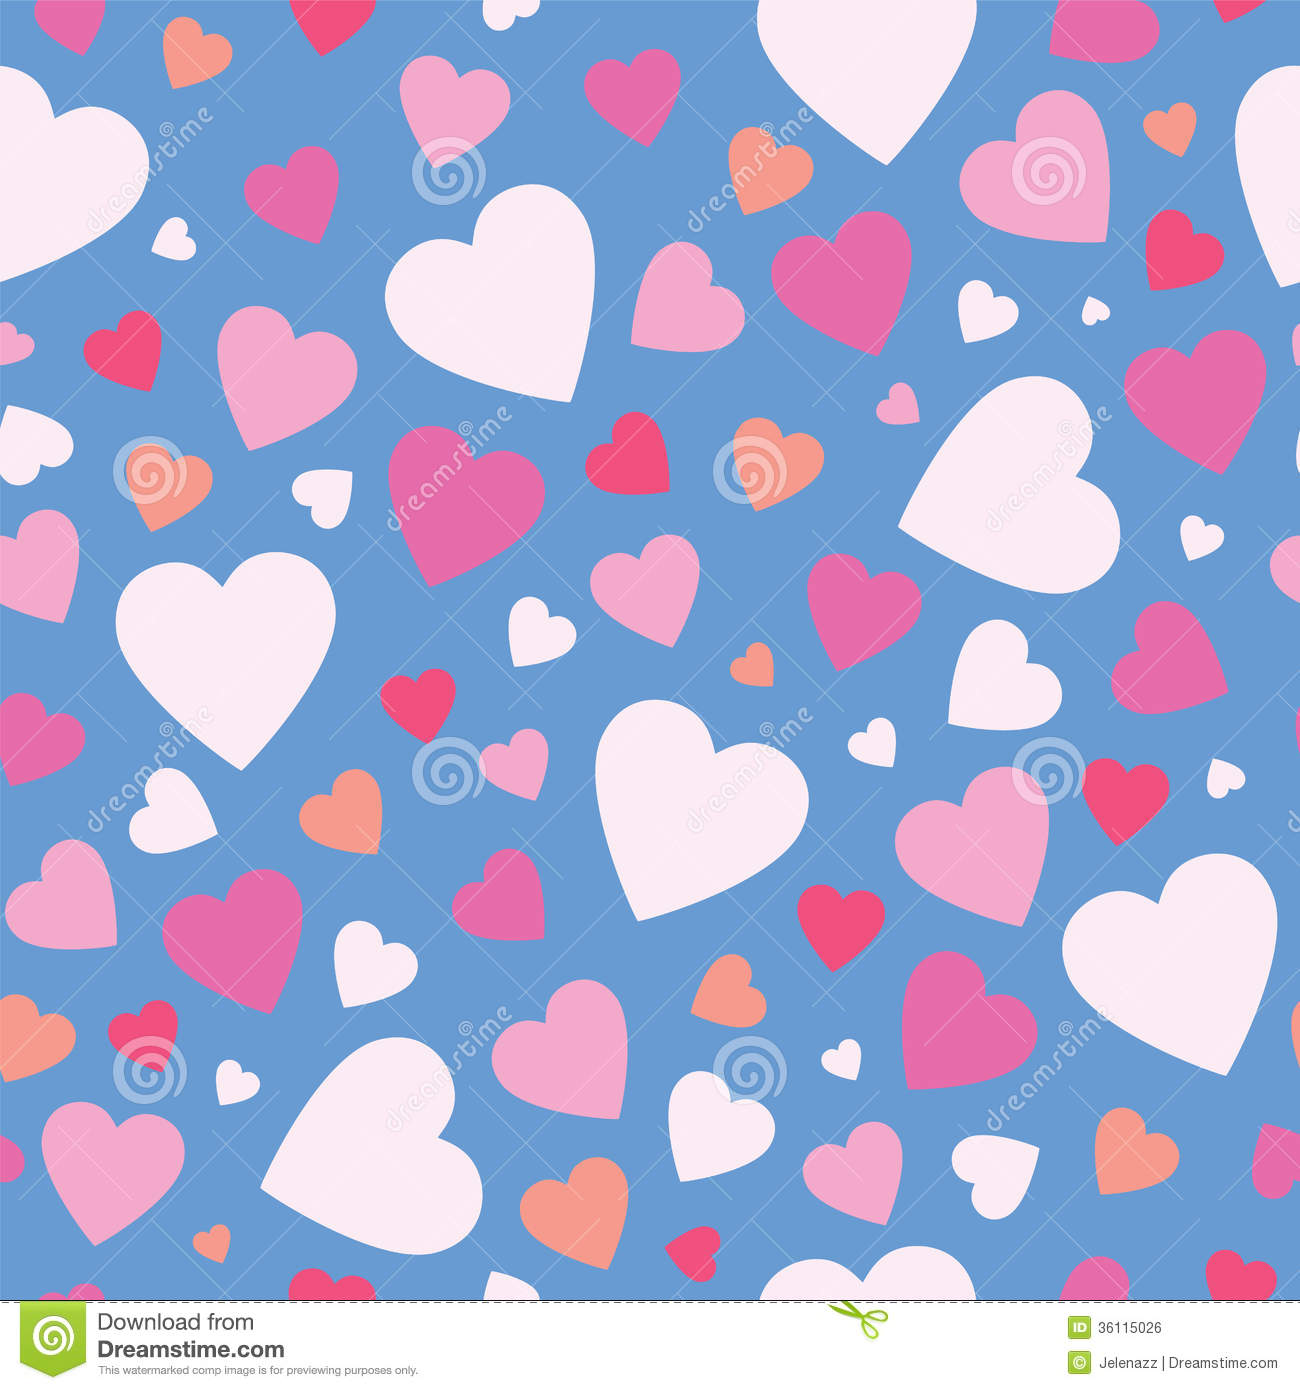 49+] Cute Pink Heart Wallpaper - WallpaperSafari